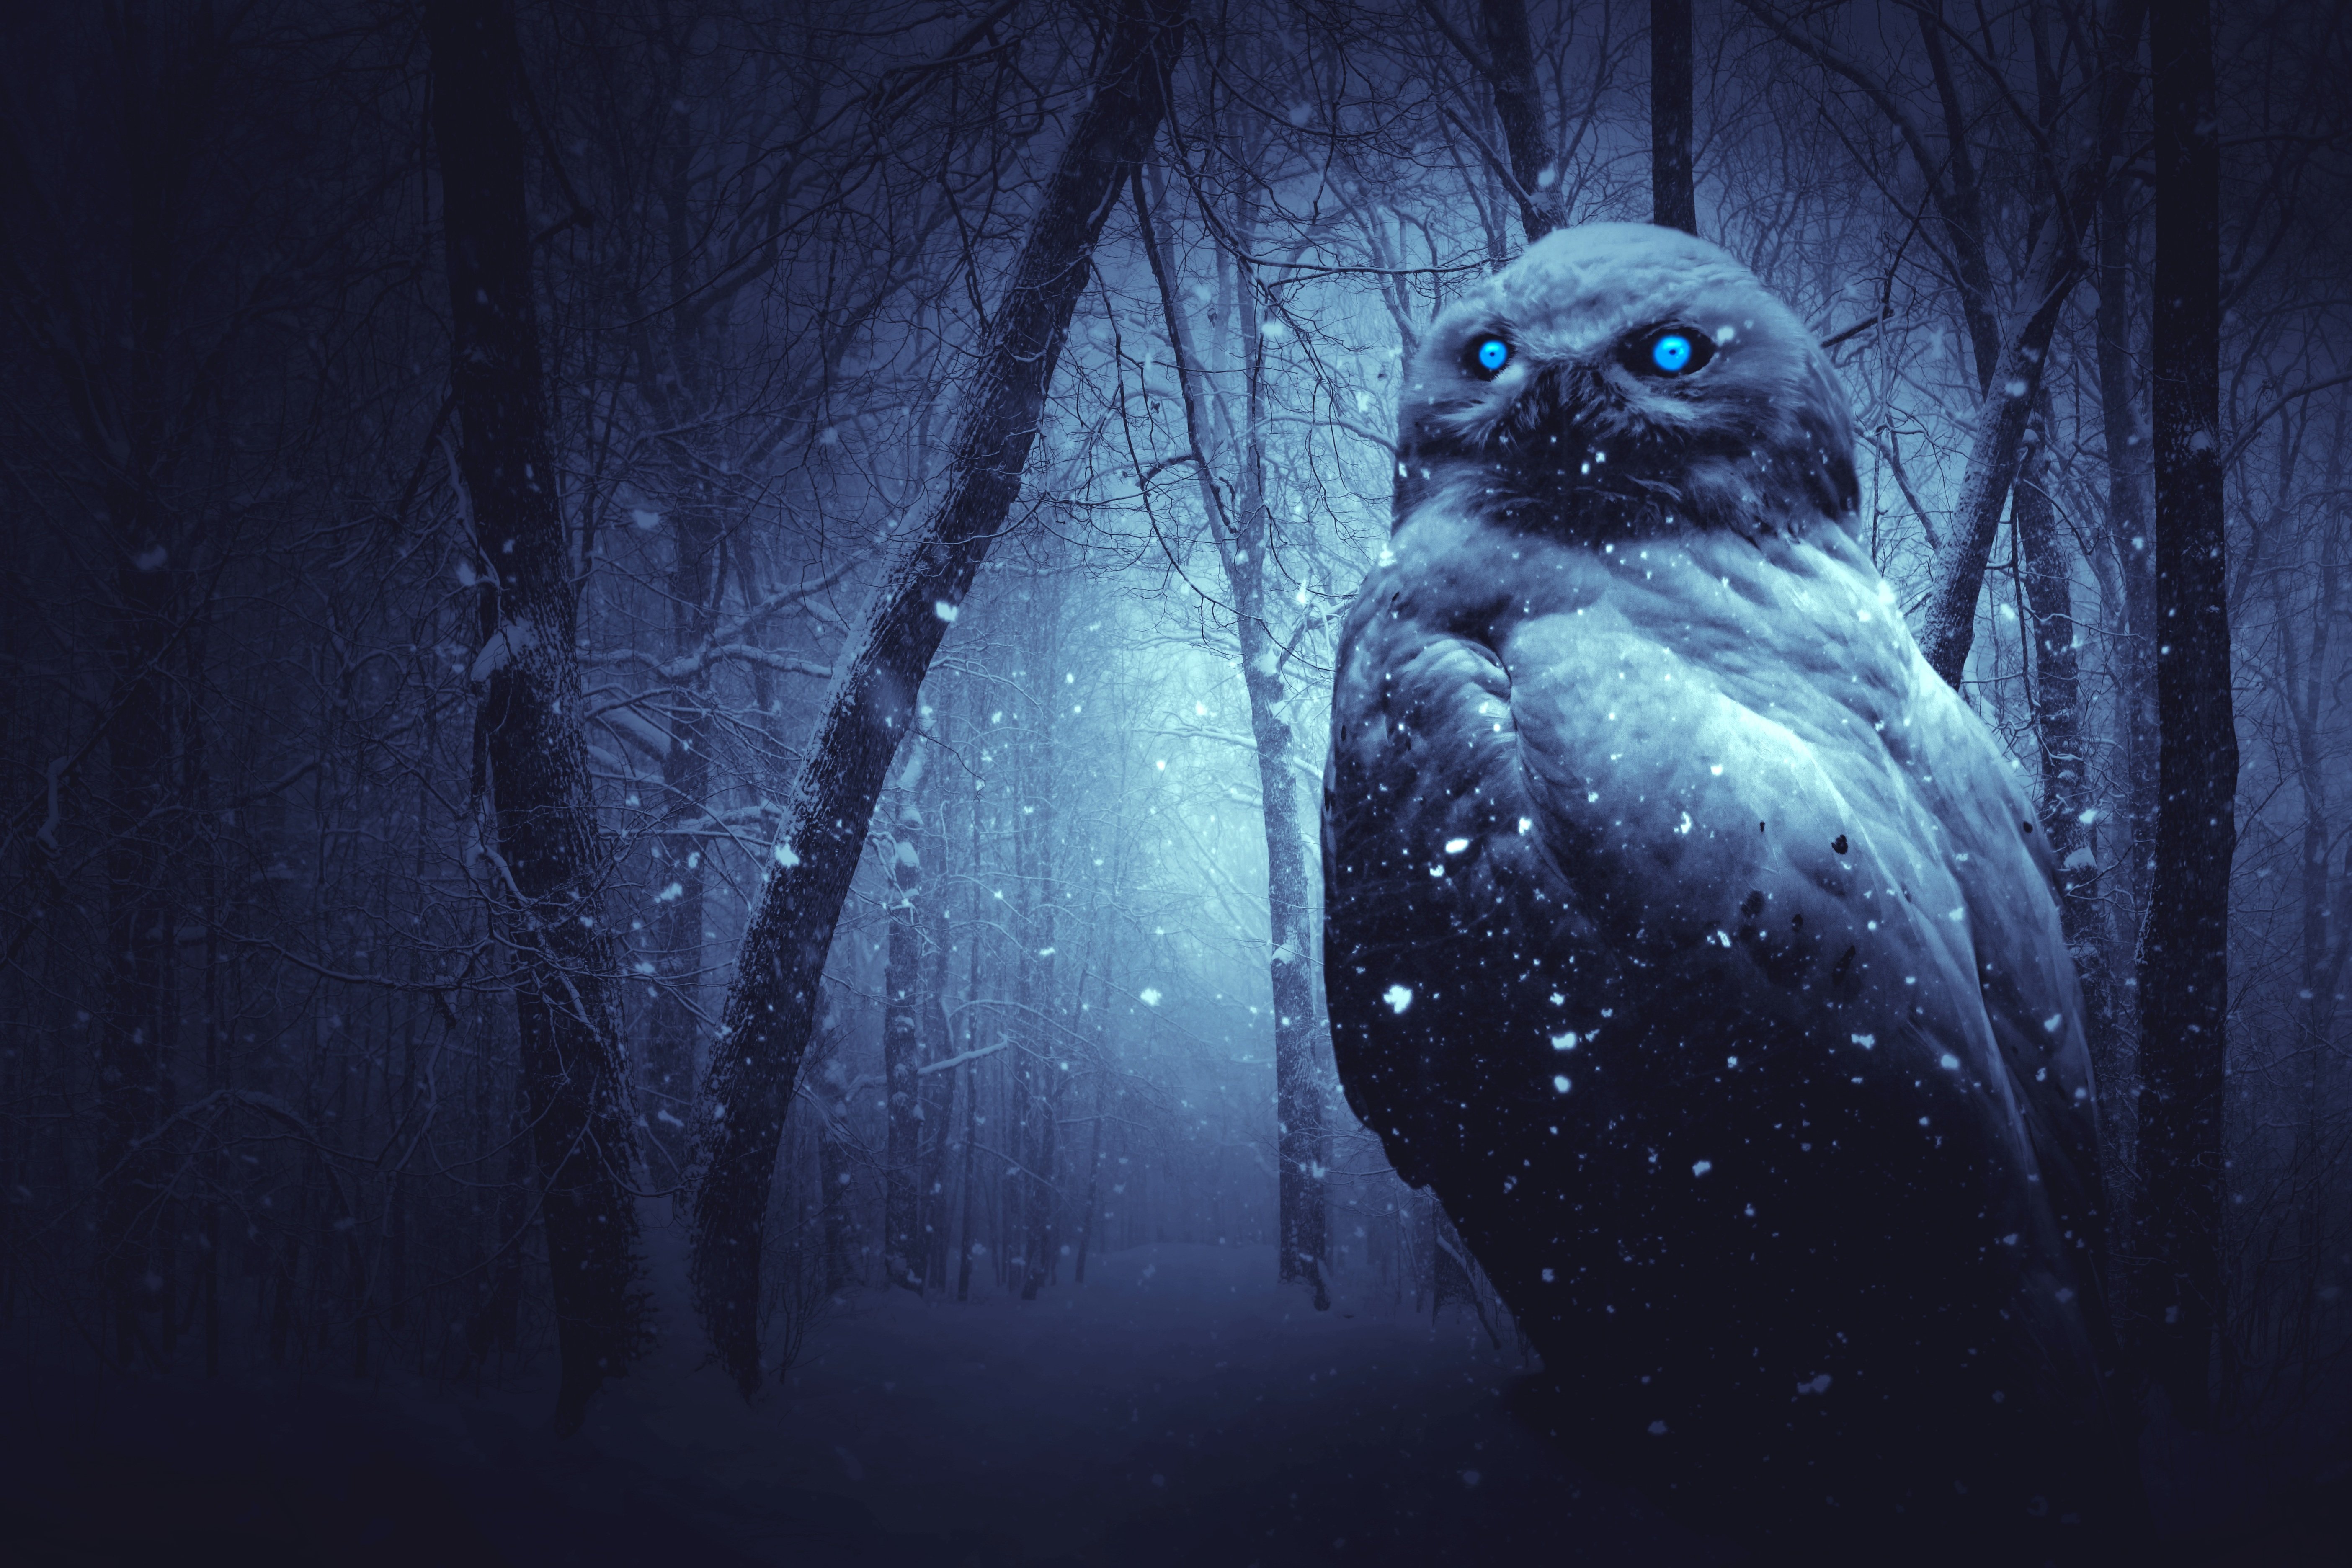 Owl in a Dark Winter Forest 4k Ultra HD Wallpaper